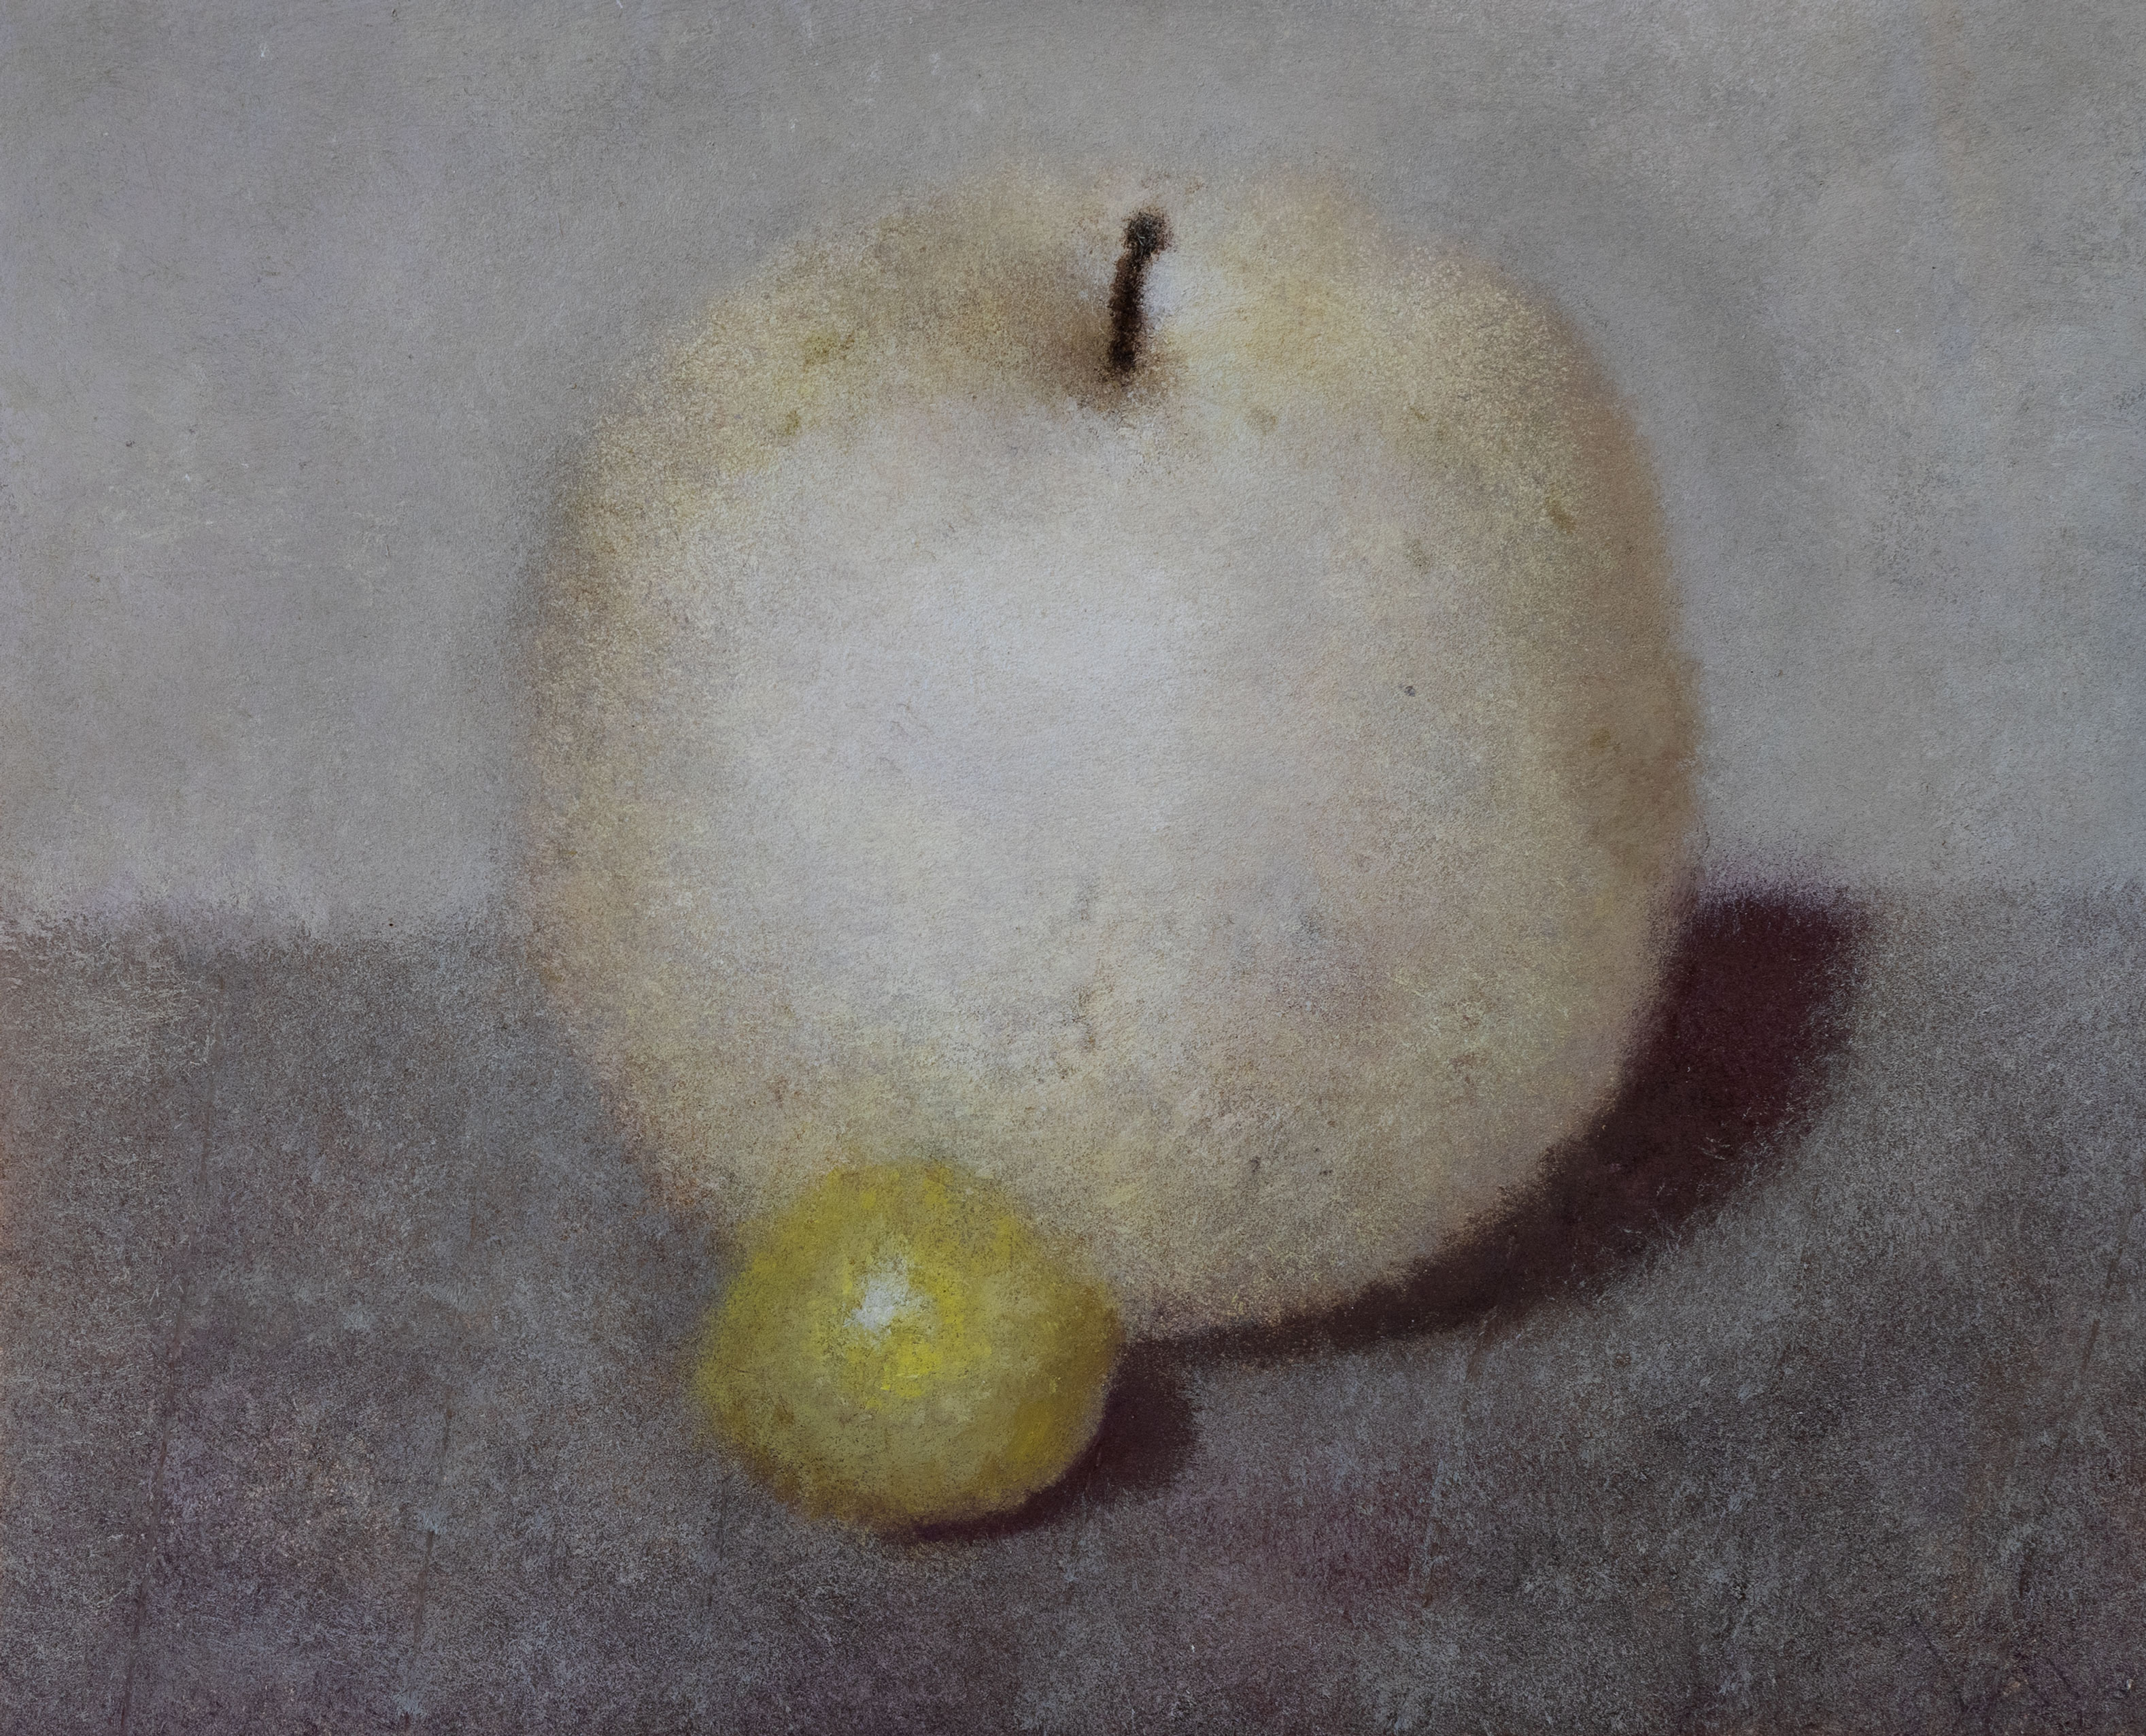 蘋果和檸檬 - 1, Yuri Pervushin, 买画 作者的技术